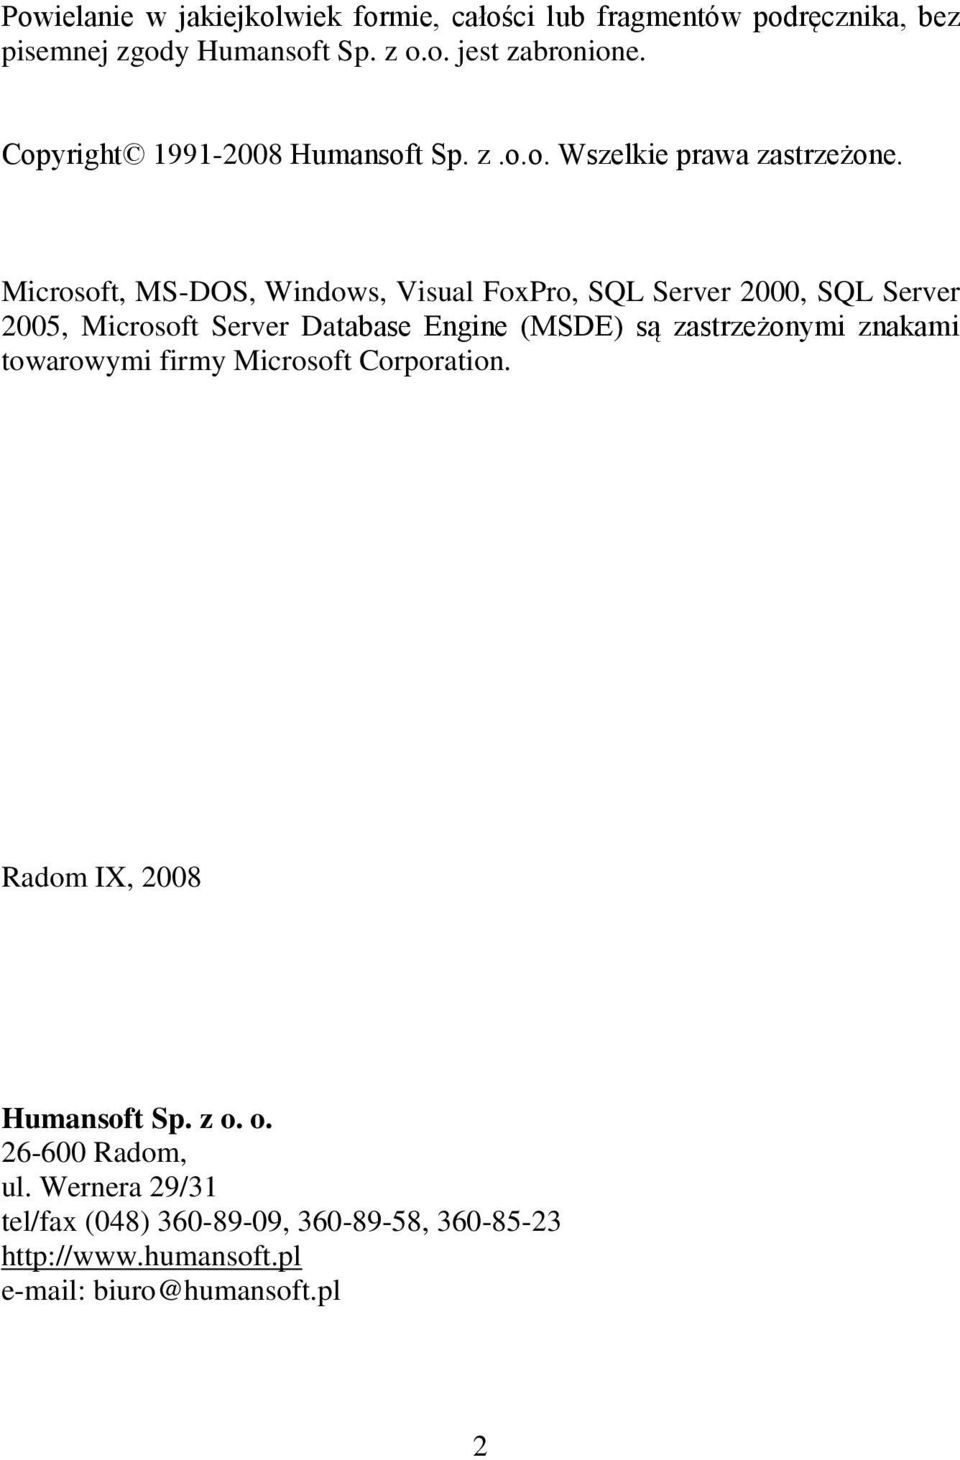 Microsoft, MS-DOS, Windows, Visual FoxPro, SQL Server 2000, SQL Server 2005, Microsoft Server Database Engine (MSDE) są zastrzeżonymi